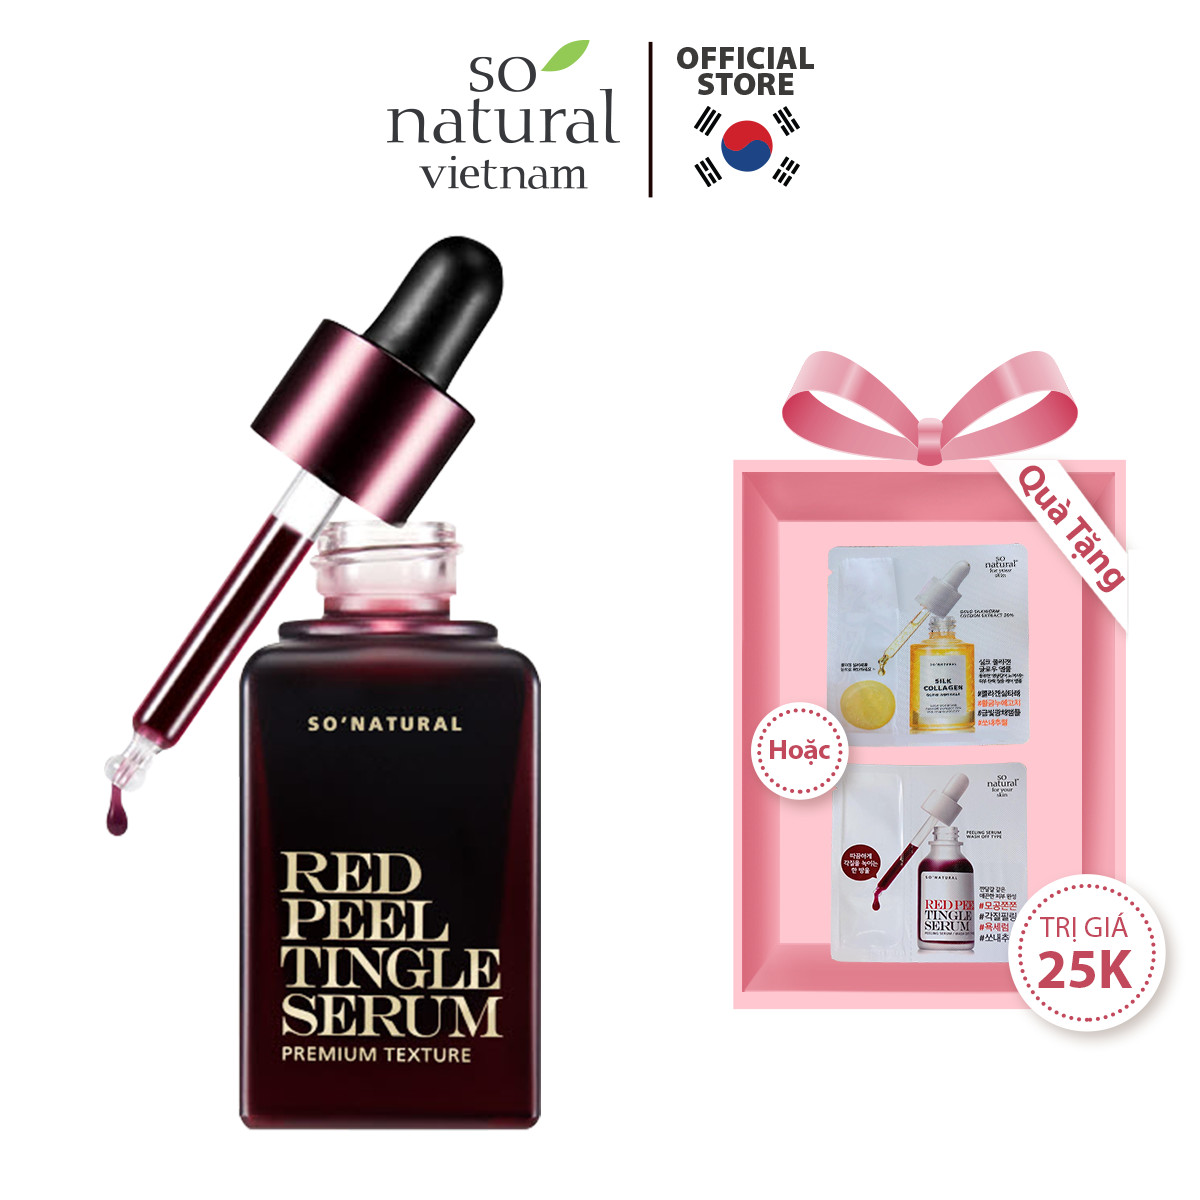 Red Peel Tingle Serum Premium 20ML Tinh Chất Tái Tạo Da Sinh Học  So Natural Chính Hãng Hàn Quốc [Mẫu Mới 2021]